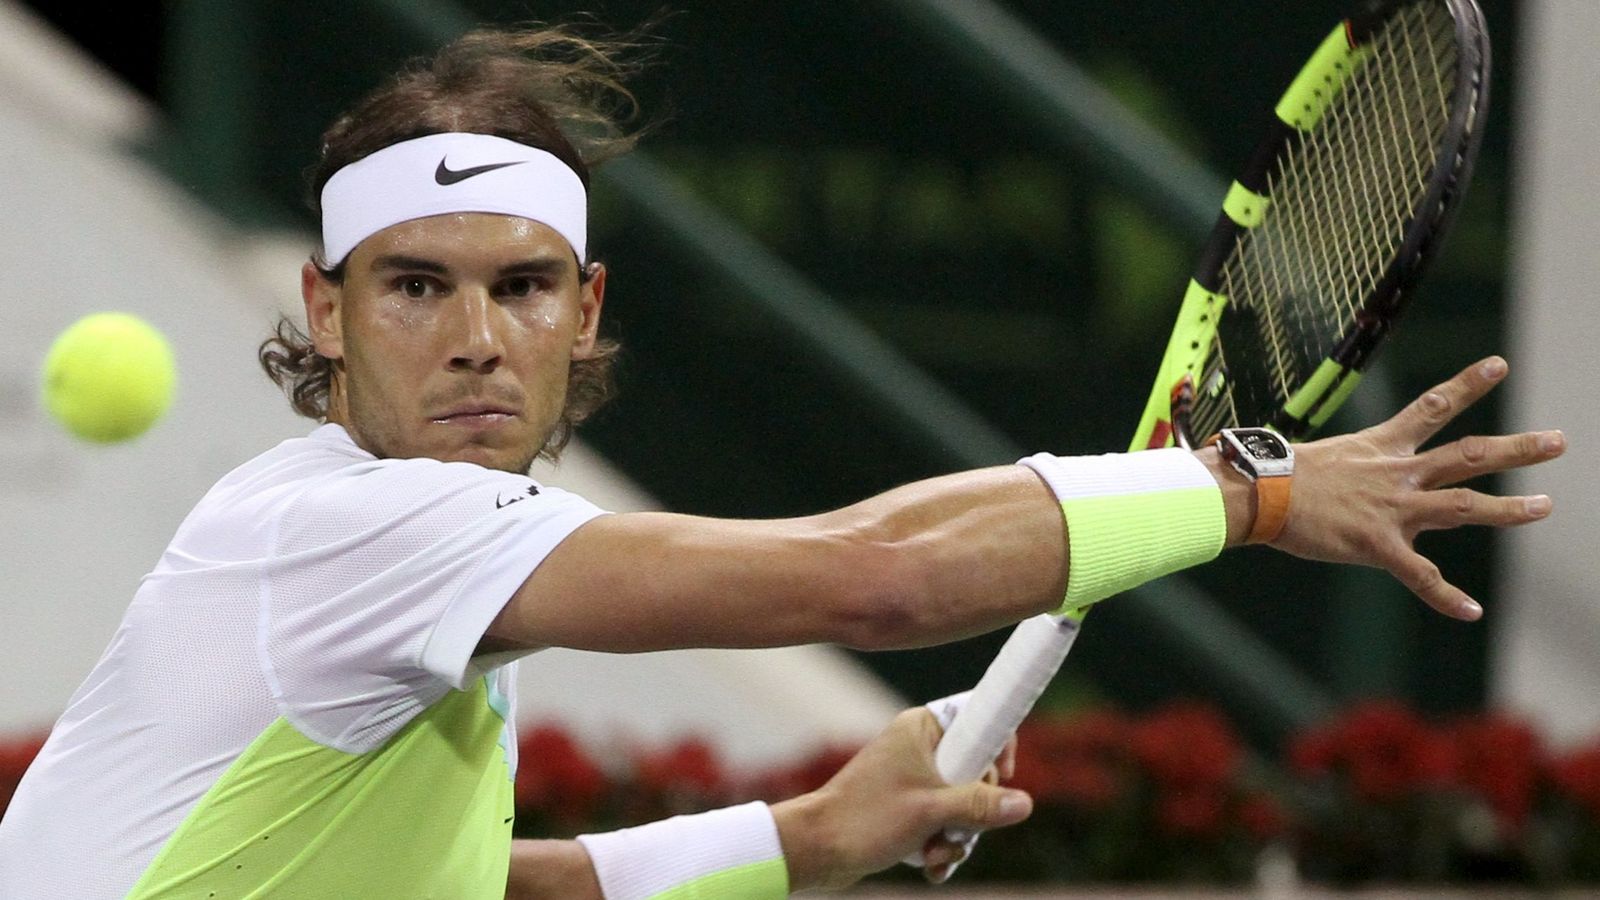 Foto: Rafa Nadal en su partido contra Haase (Reuters).